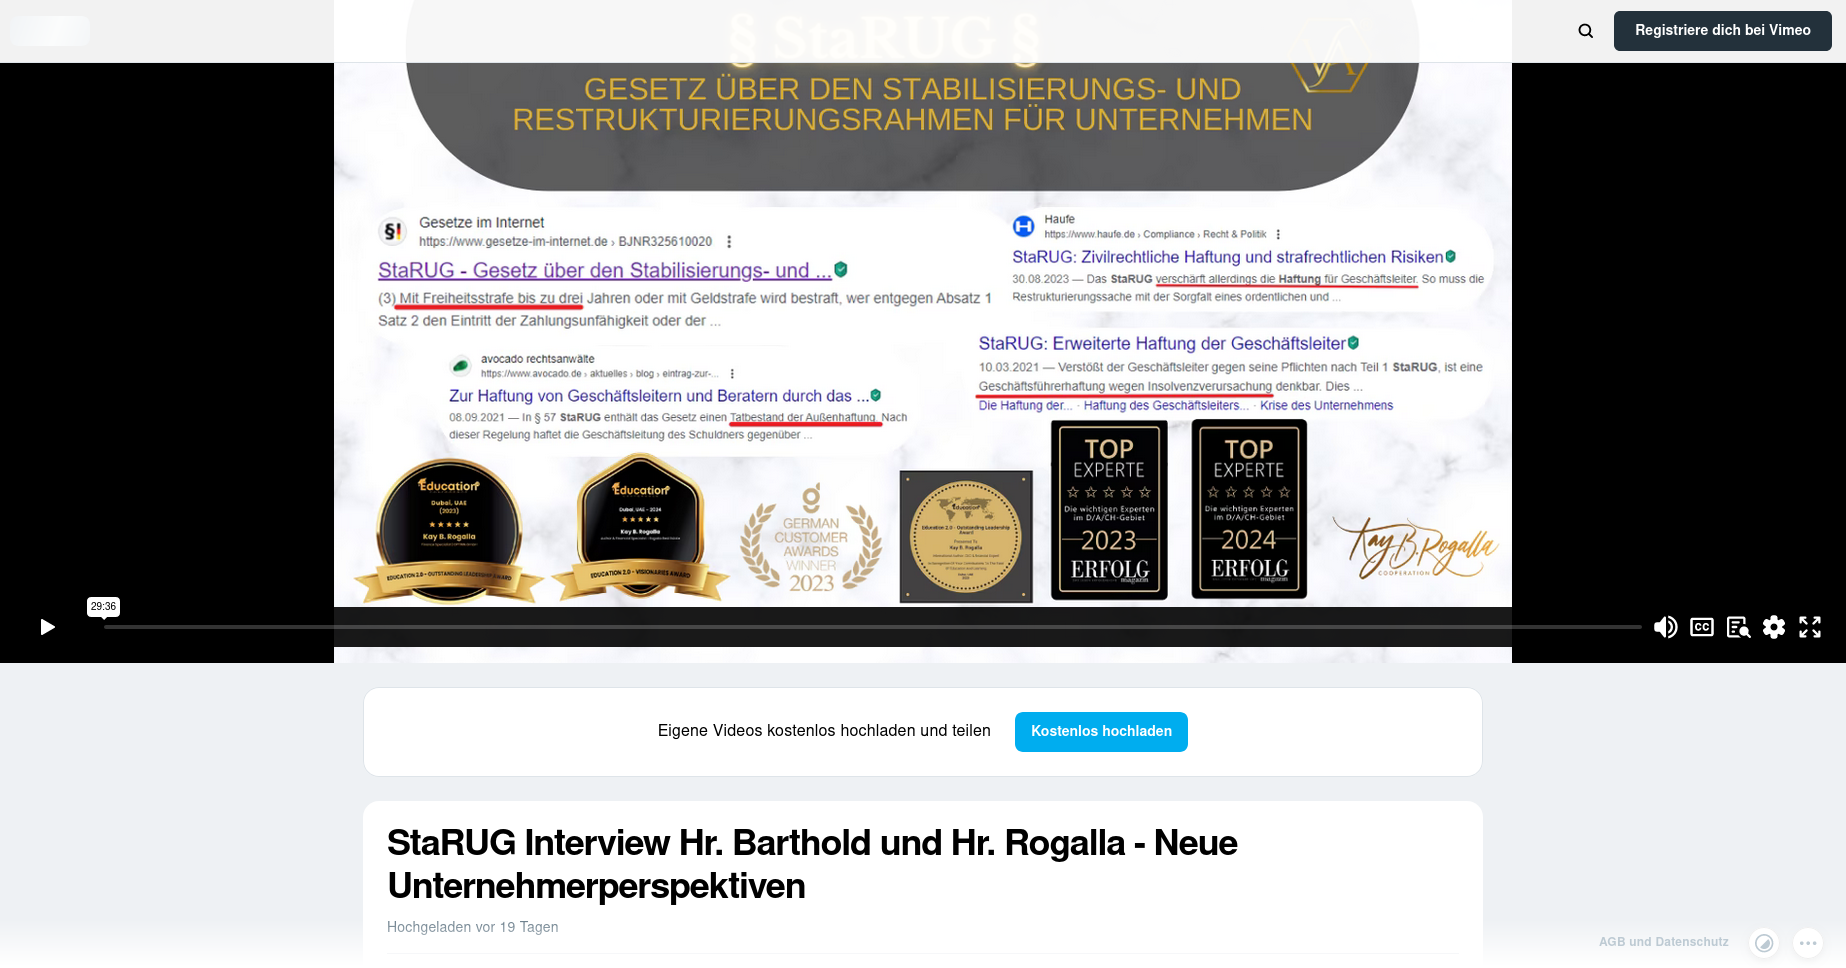 StaRUG Interview Hr. Barthold und Hr. Rogalla – Neue Unternehmerperspektiven